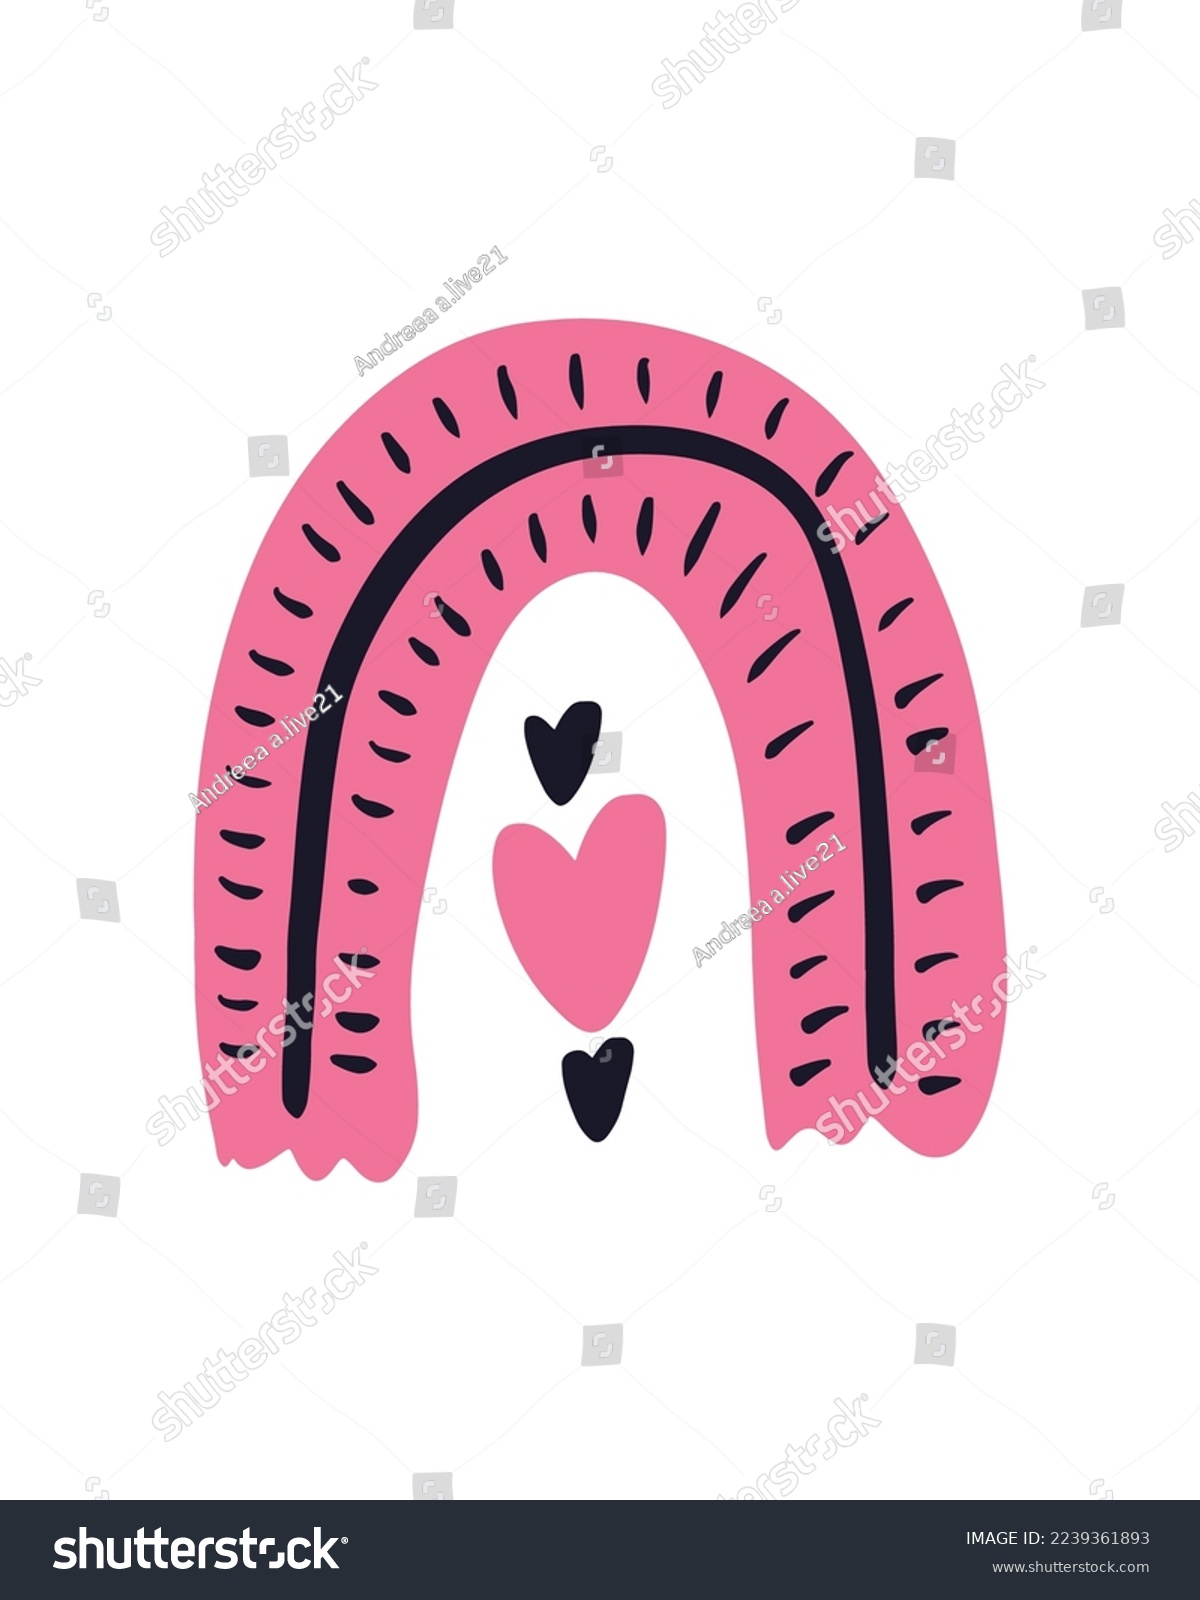 SVG of Valentine's Day Vector SVG, Doodle Hearts Illustration, Hearts Vectors, Love Illustration, Pink Painted Hearts Illustration, Hearts Rainbow, Love svg